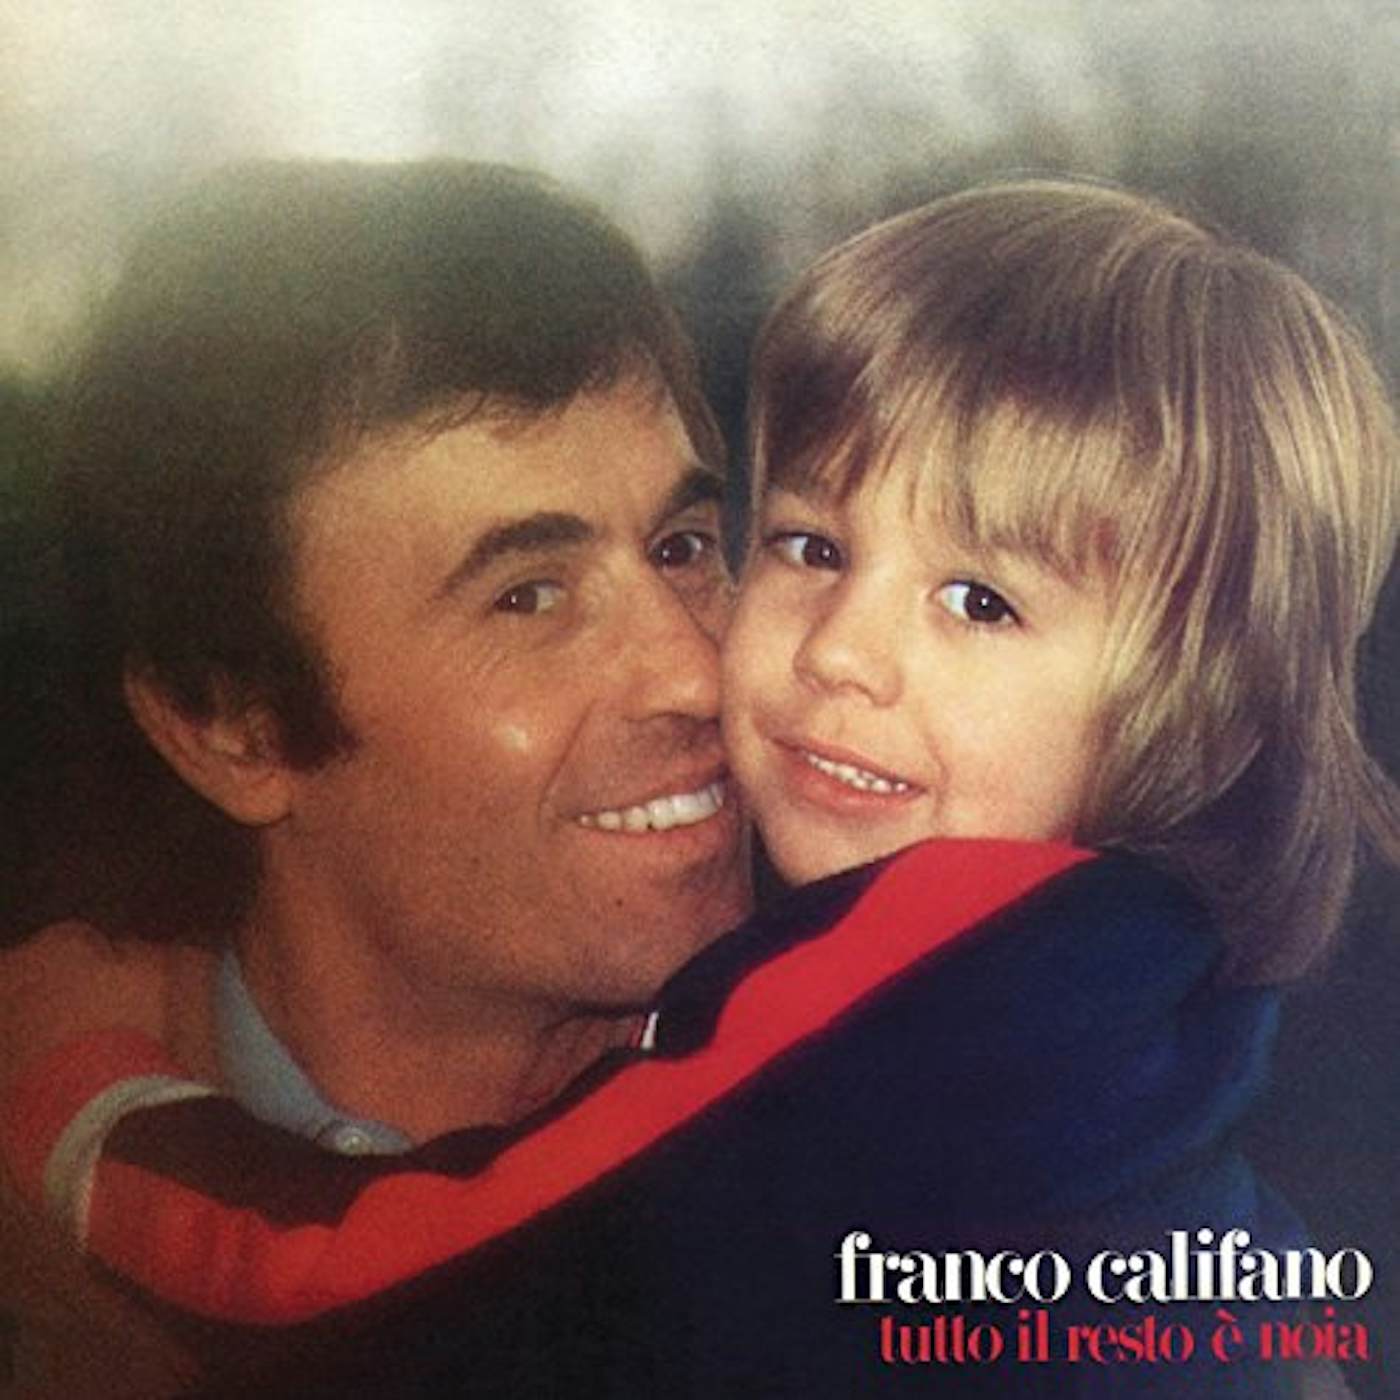 Franco Califano TUTTO IL RESTO E NOIA Vinyl Record